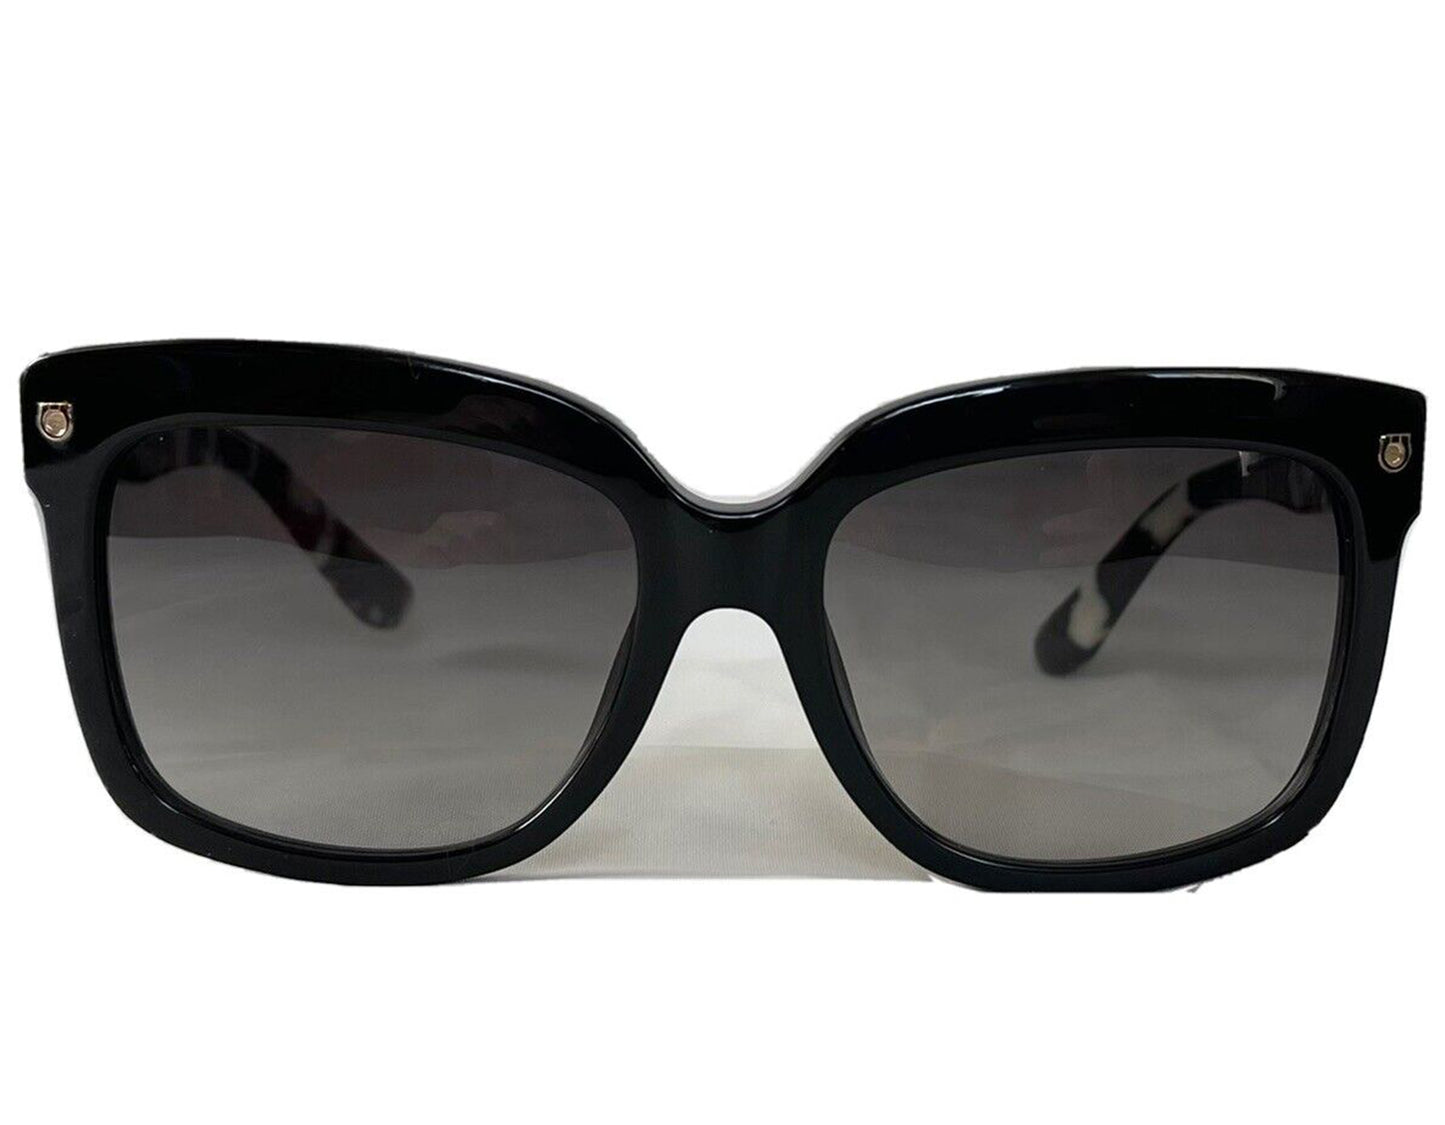 Salvatore Ferragamo SF676S-001-55 55mm New Sunglasses